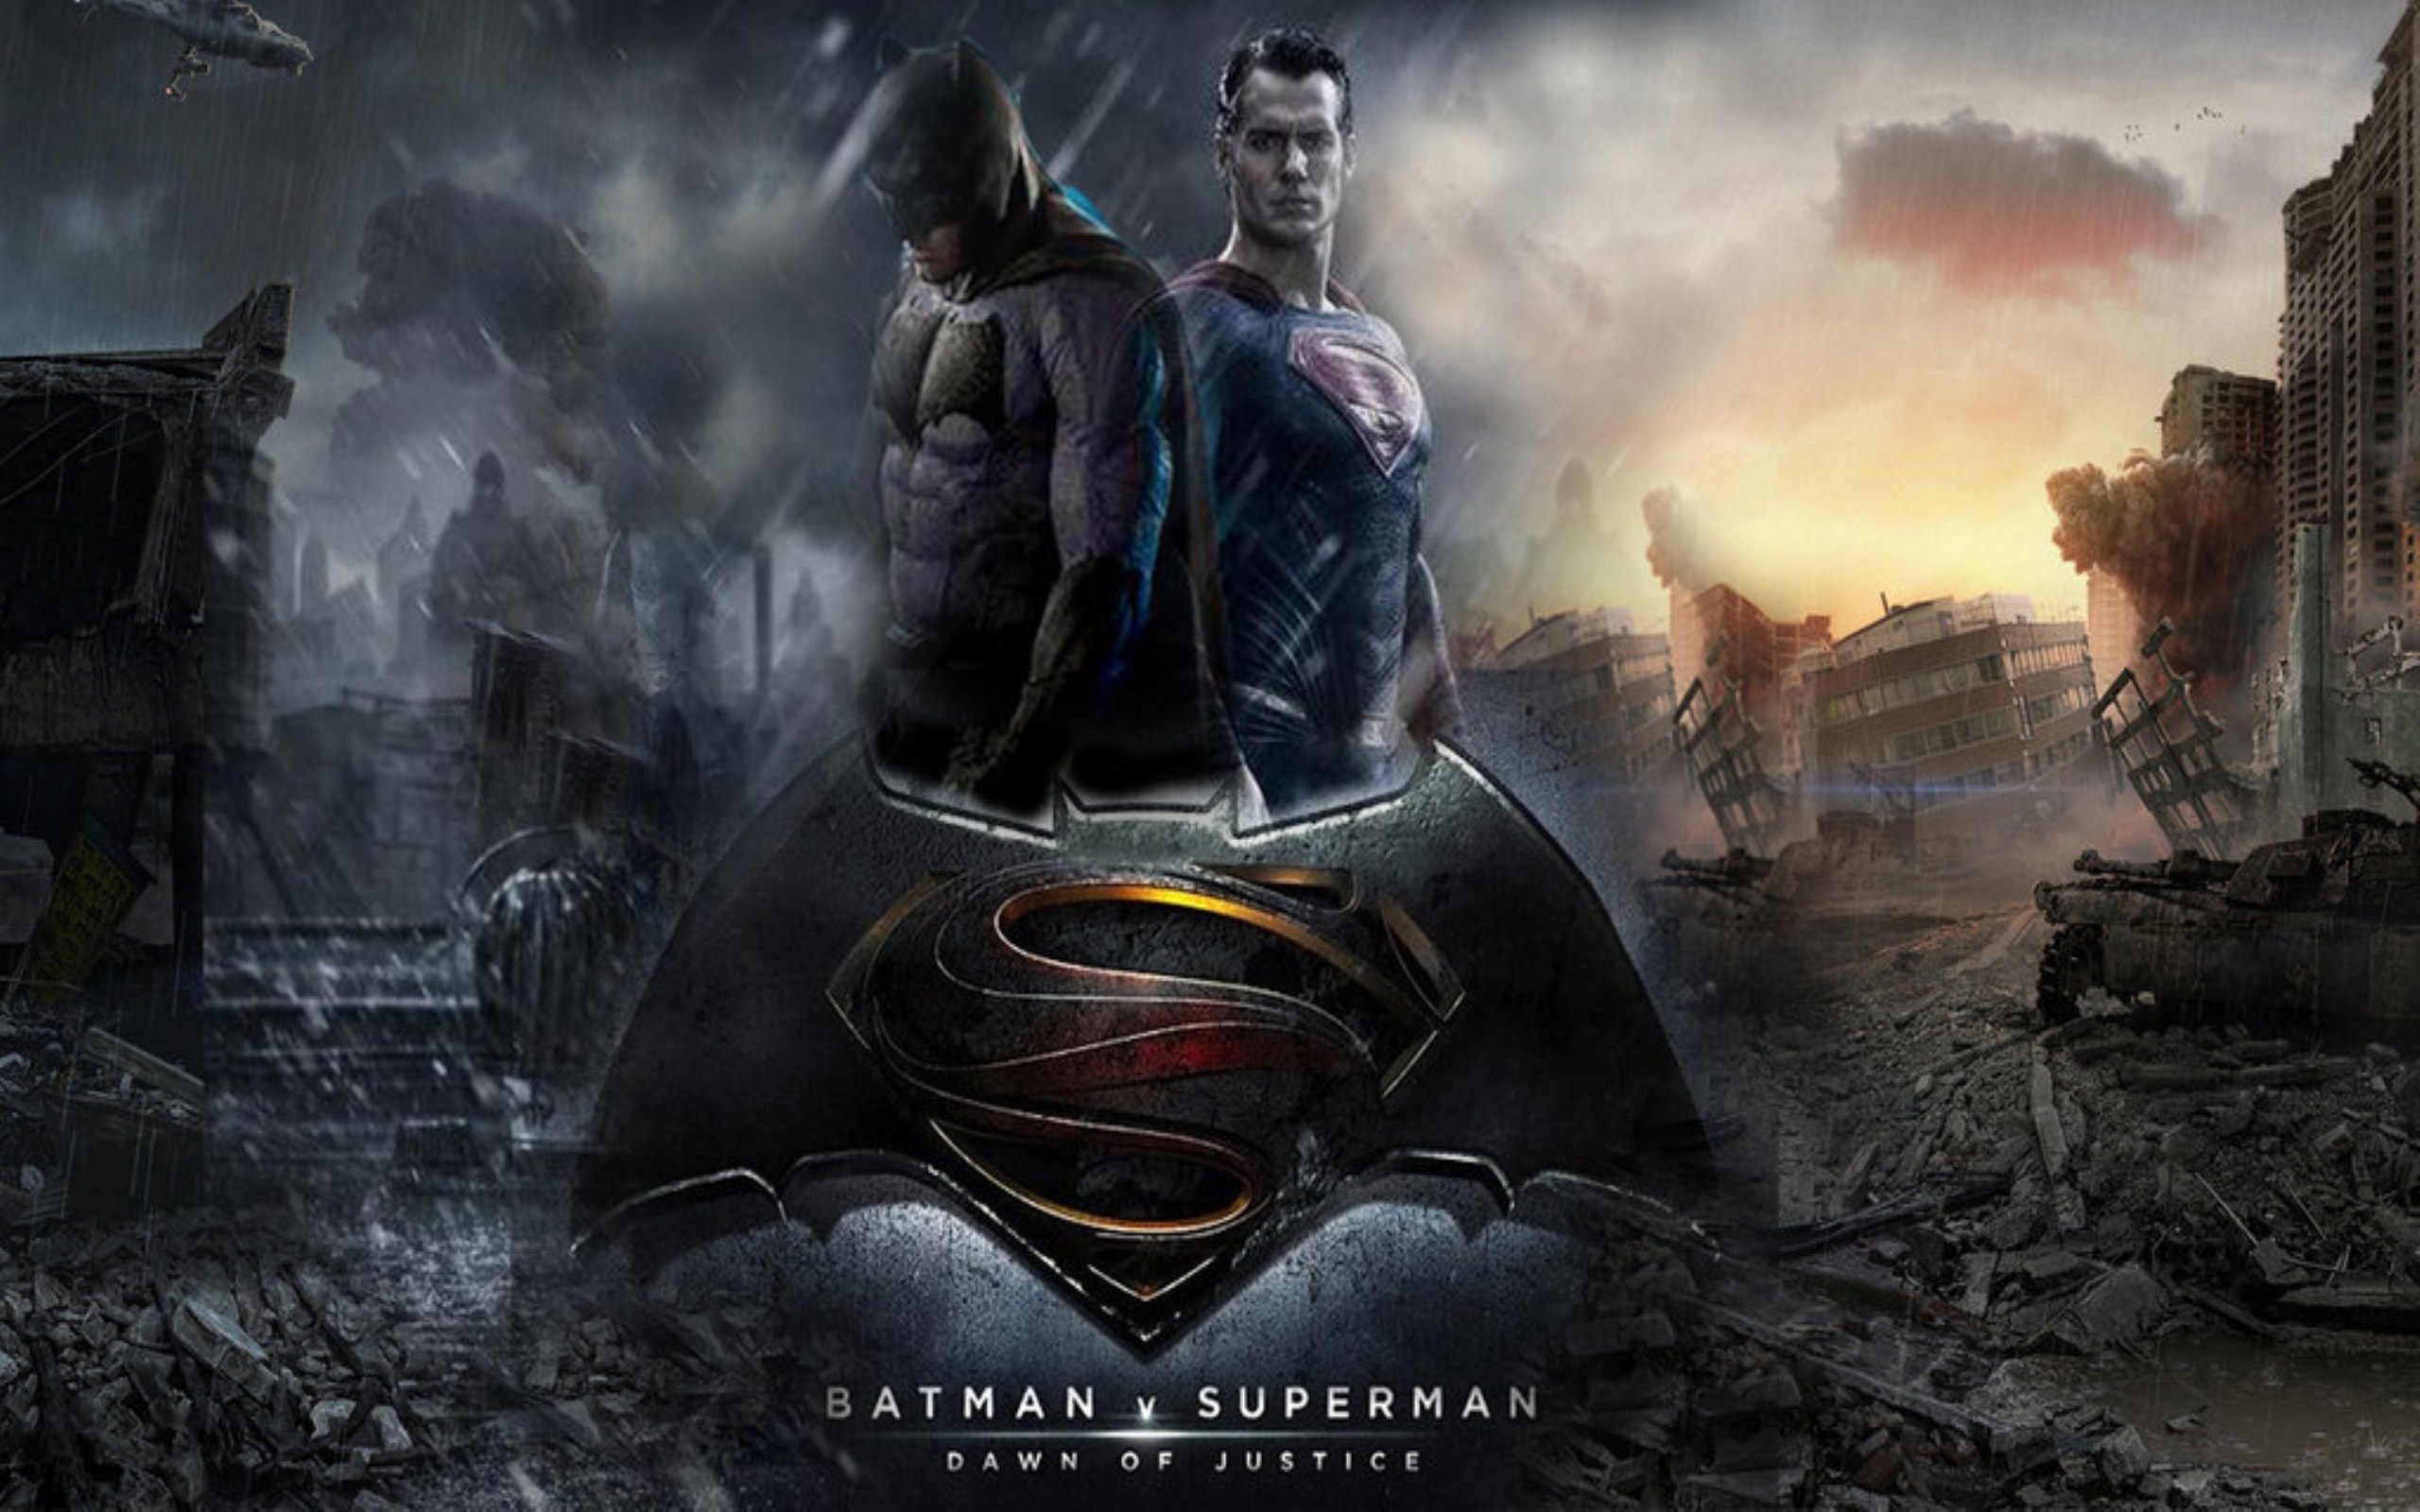 Batman Vs Superman - Batman Vs Superman Wallpaper Full Hd - HD Wallpaper 